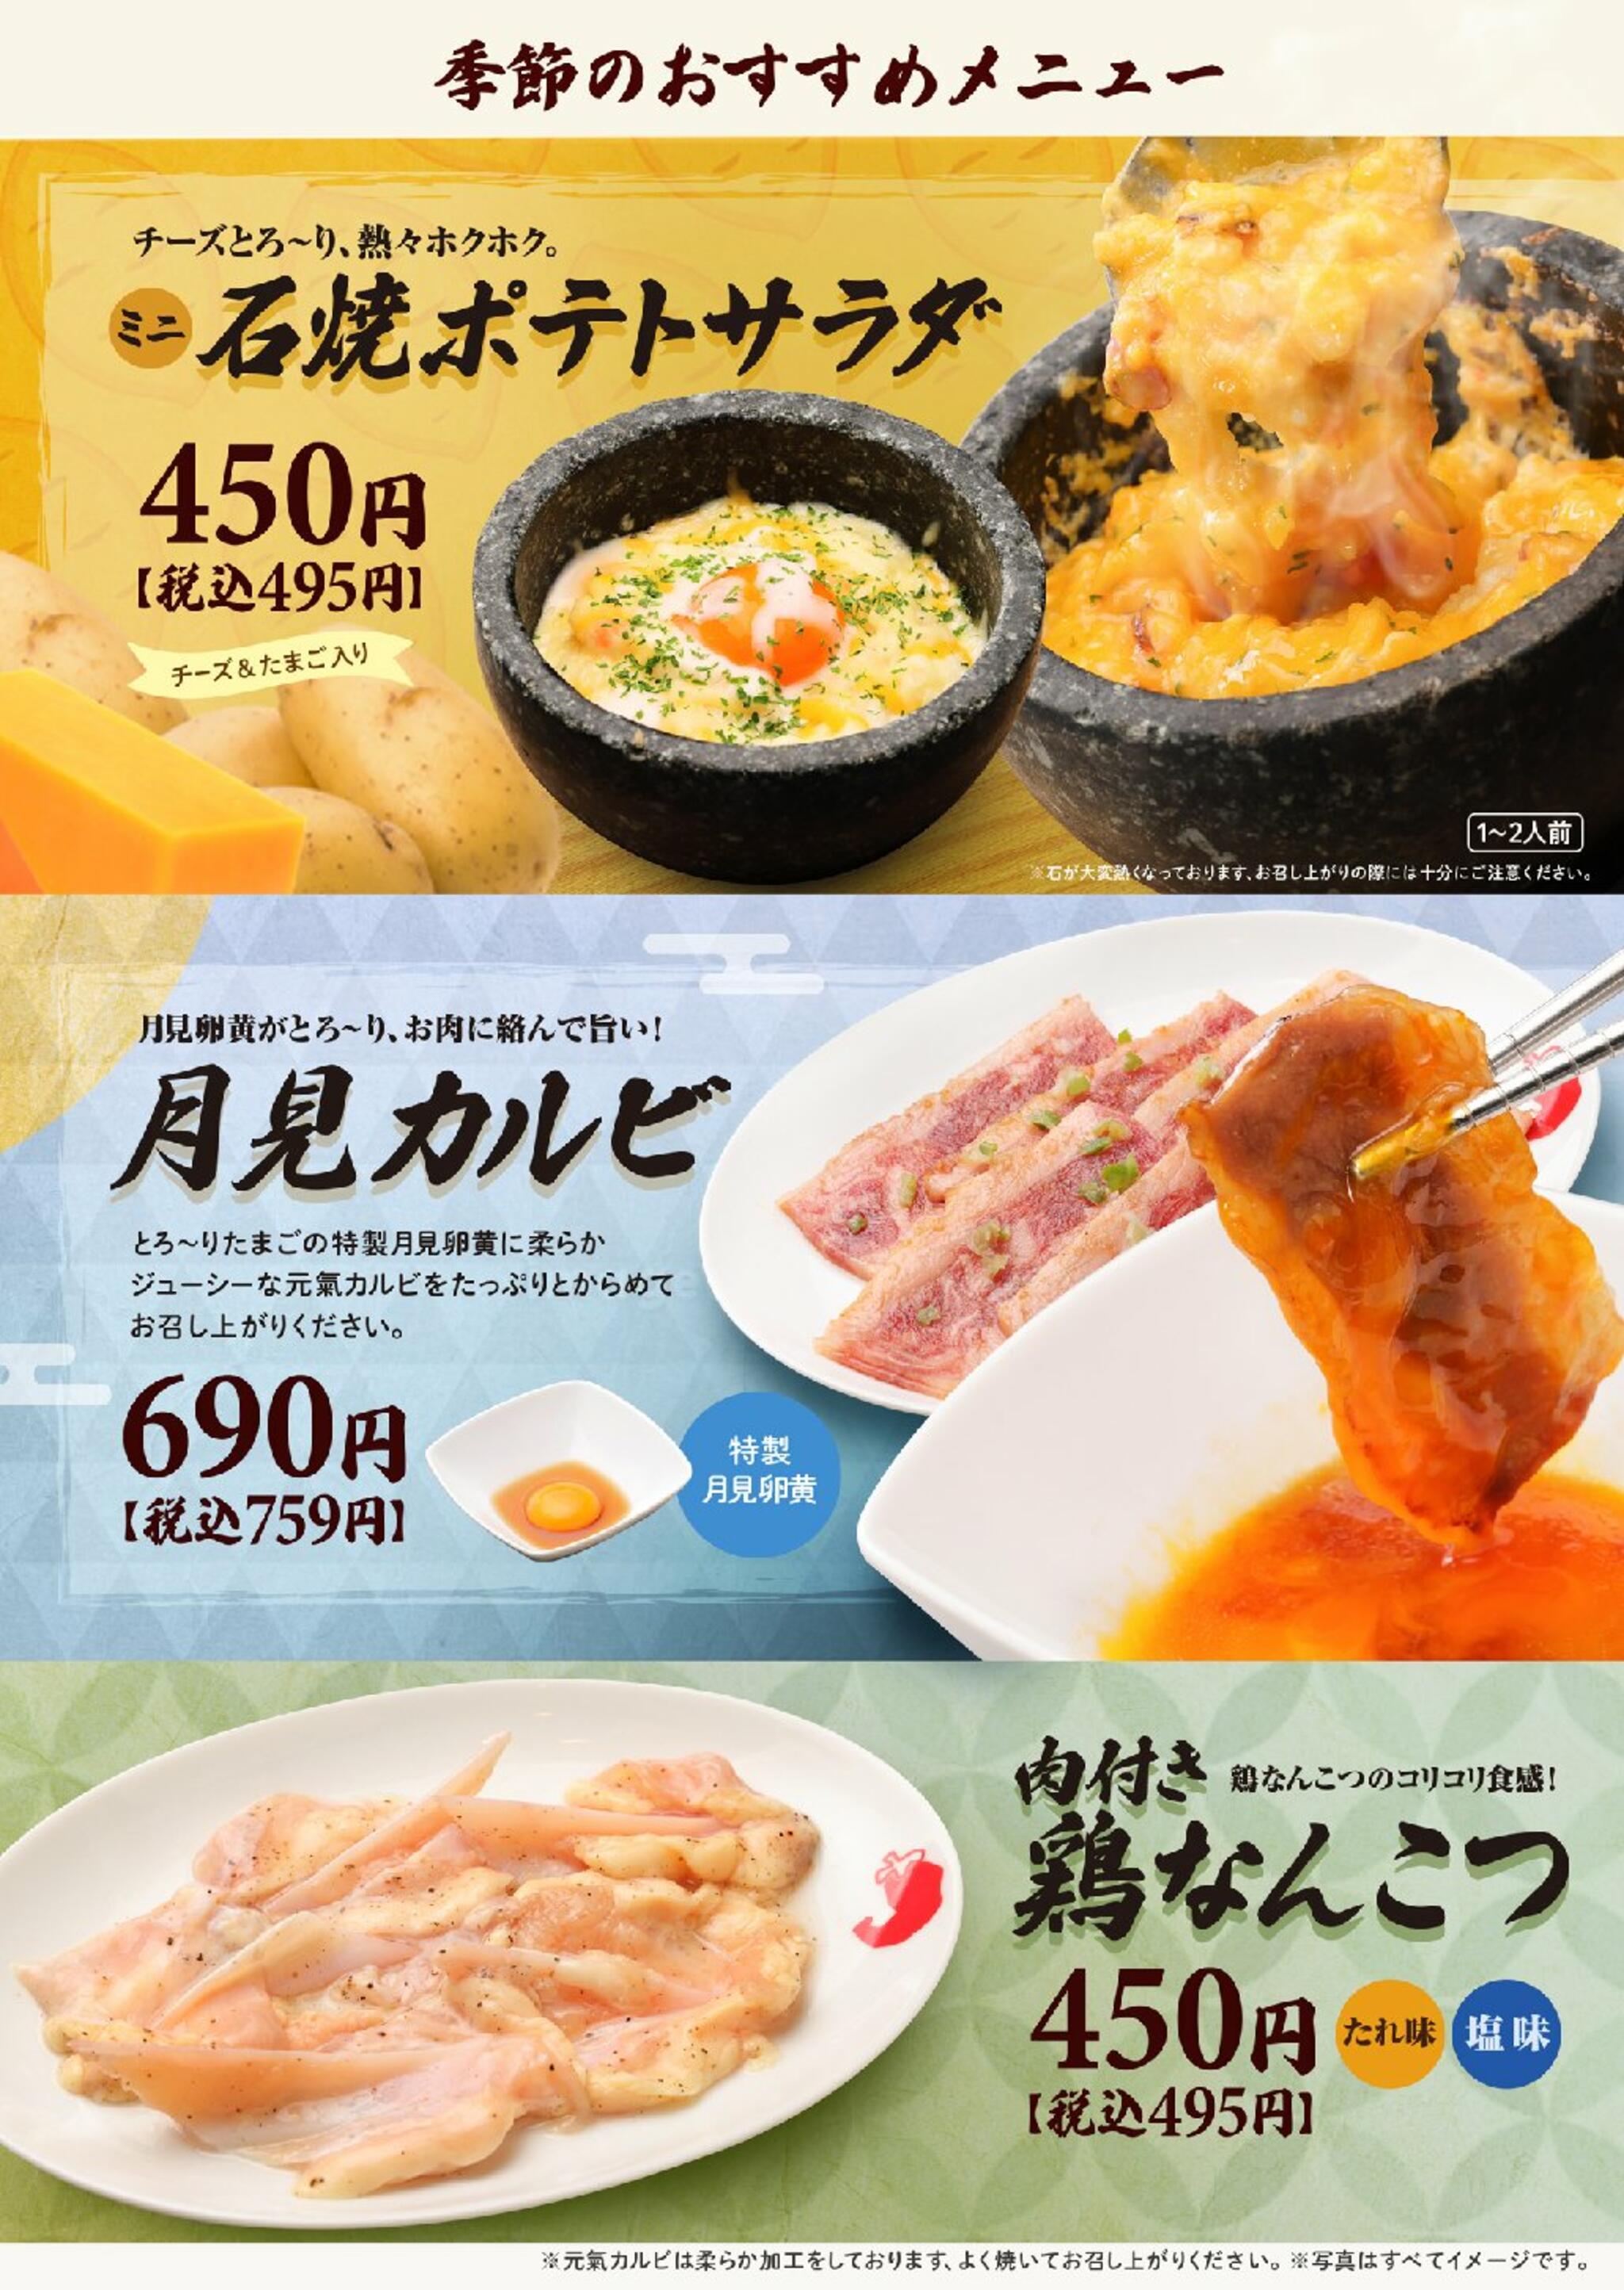 焼肉冷麺やまなか家 北上店からのお知らせ(☆★☆ 季節のおすすめメニュー ☆★☆)に関する写真